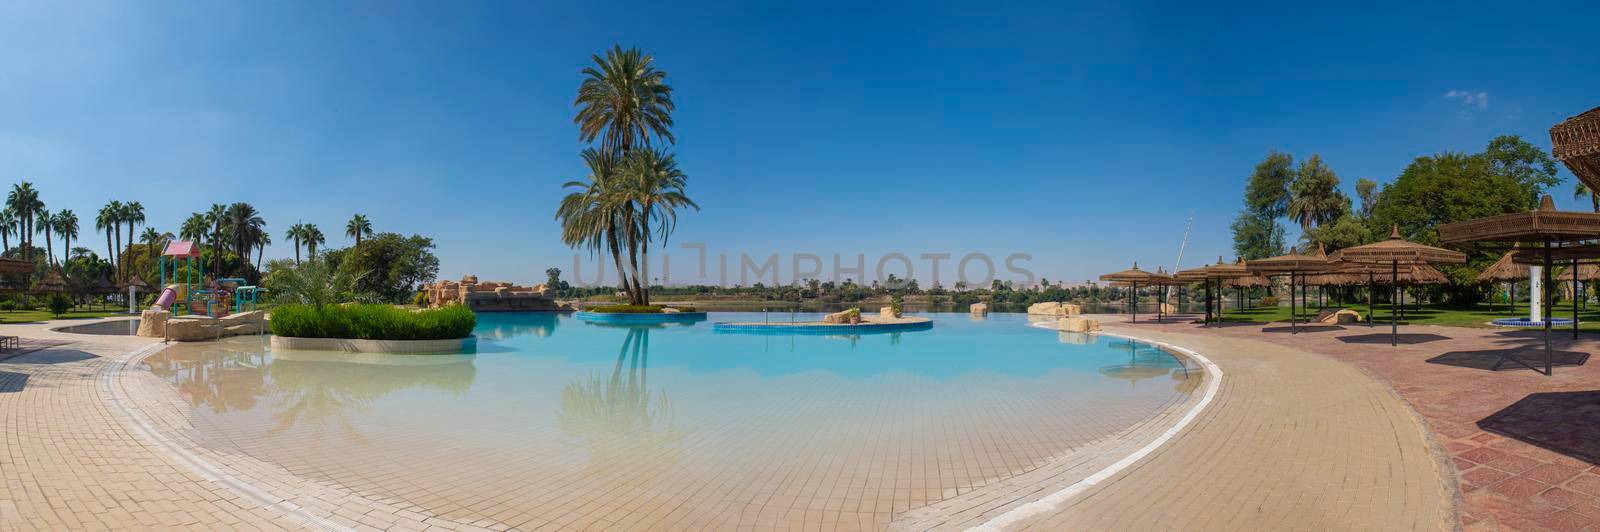 Panoramic view of infinity swimming pool at tropical resort by paulvinten